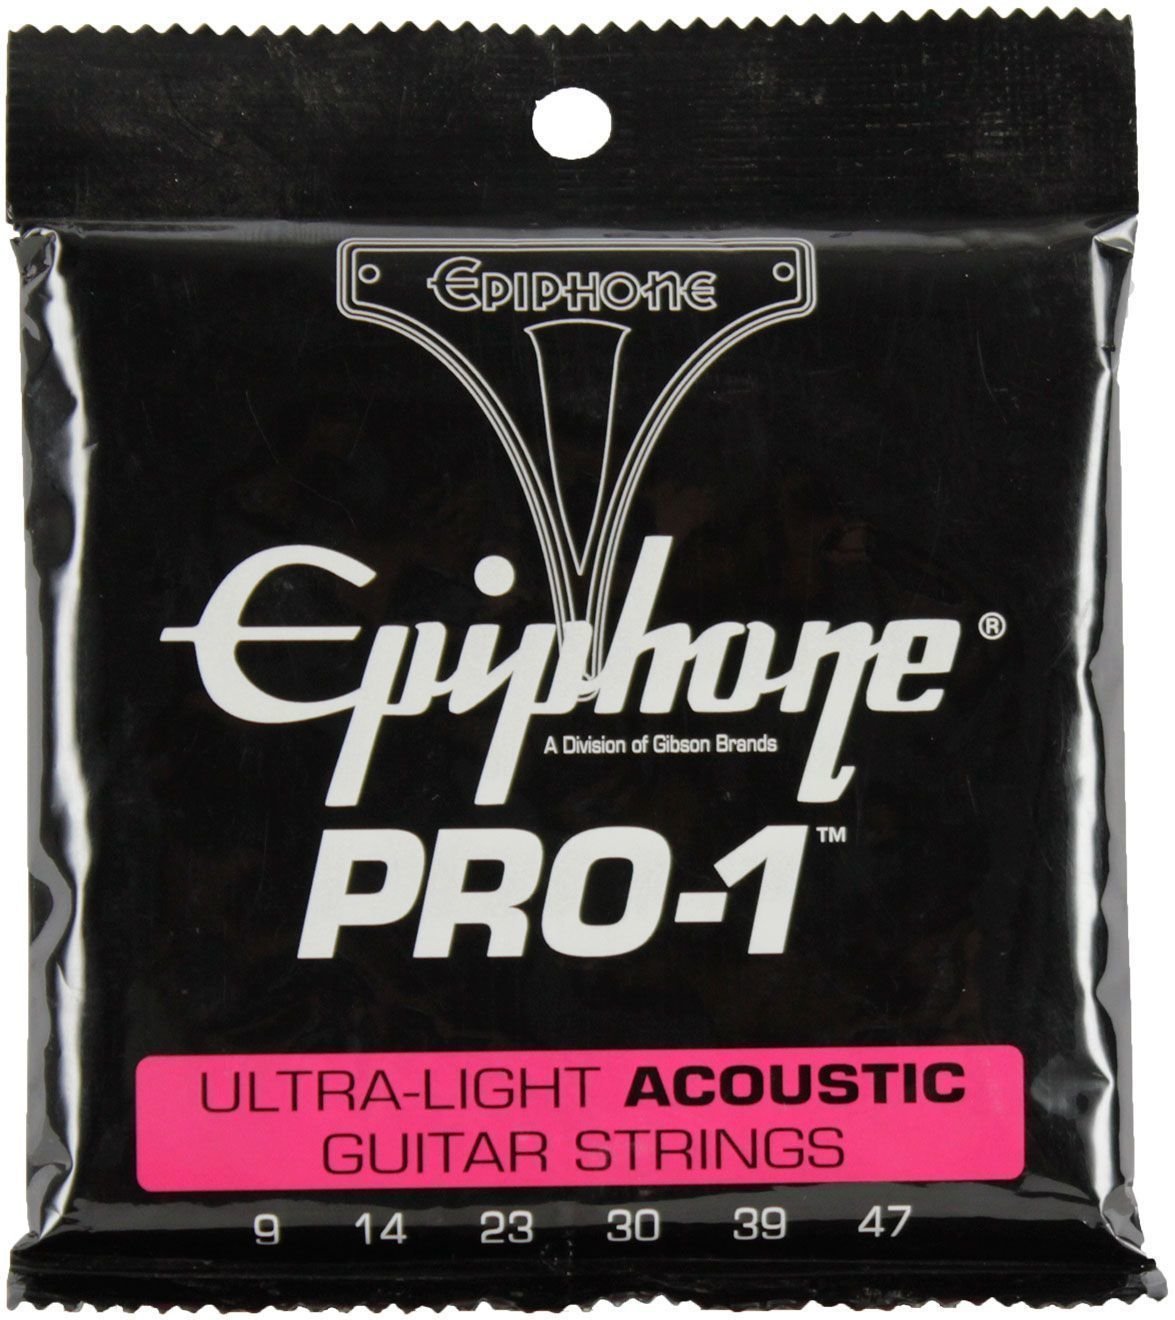 Snaren voor akoestische gitaar Epiphone Pro-1 Ultra-Light Acoustic Strings